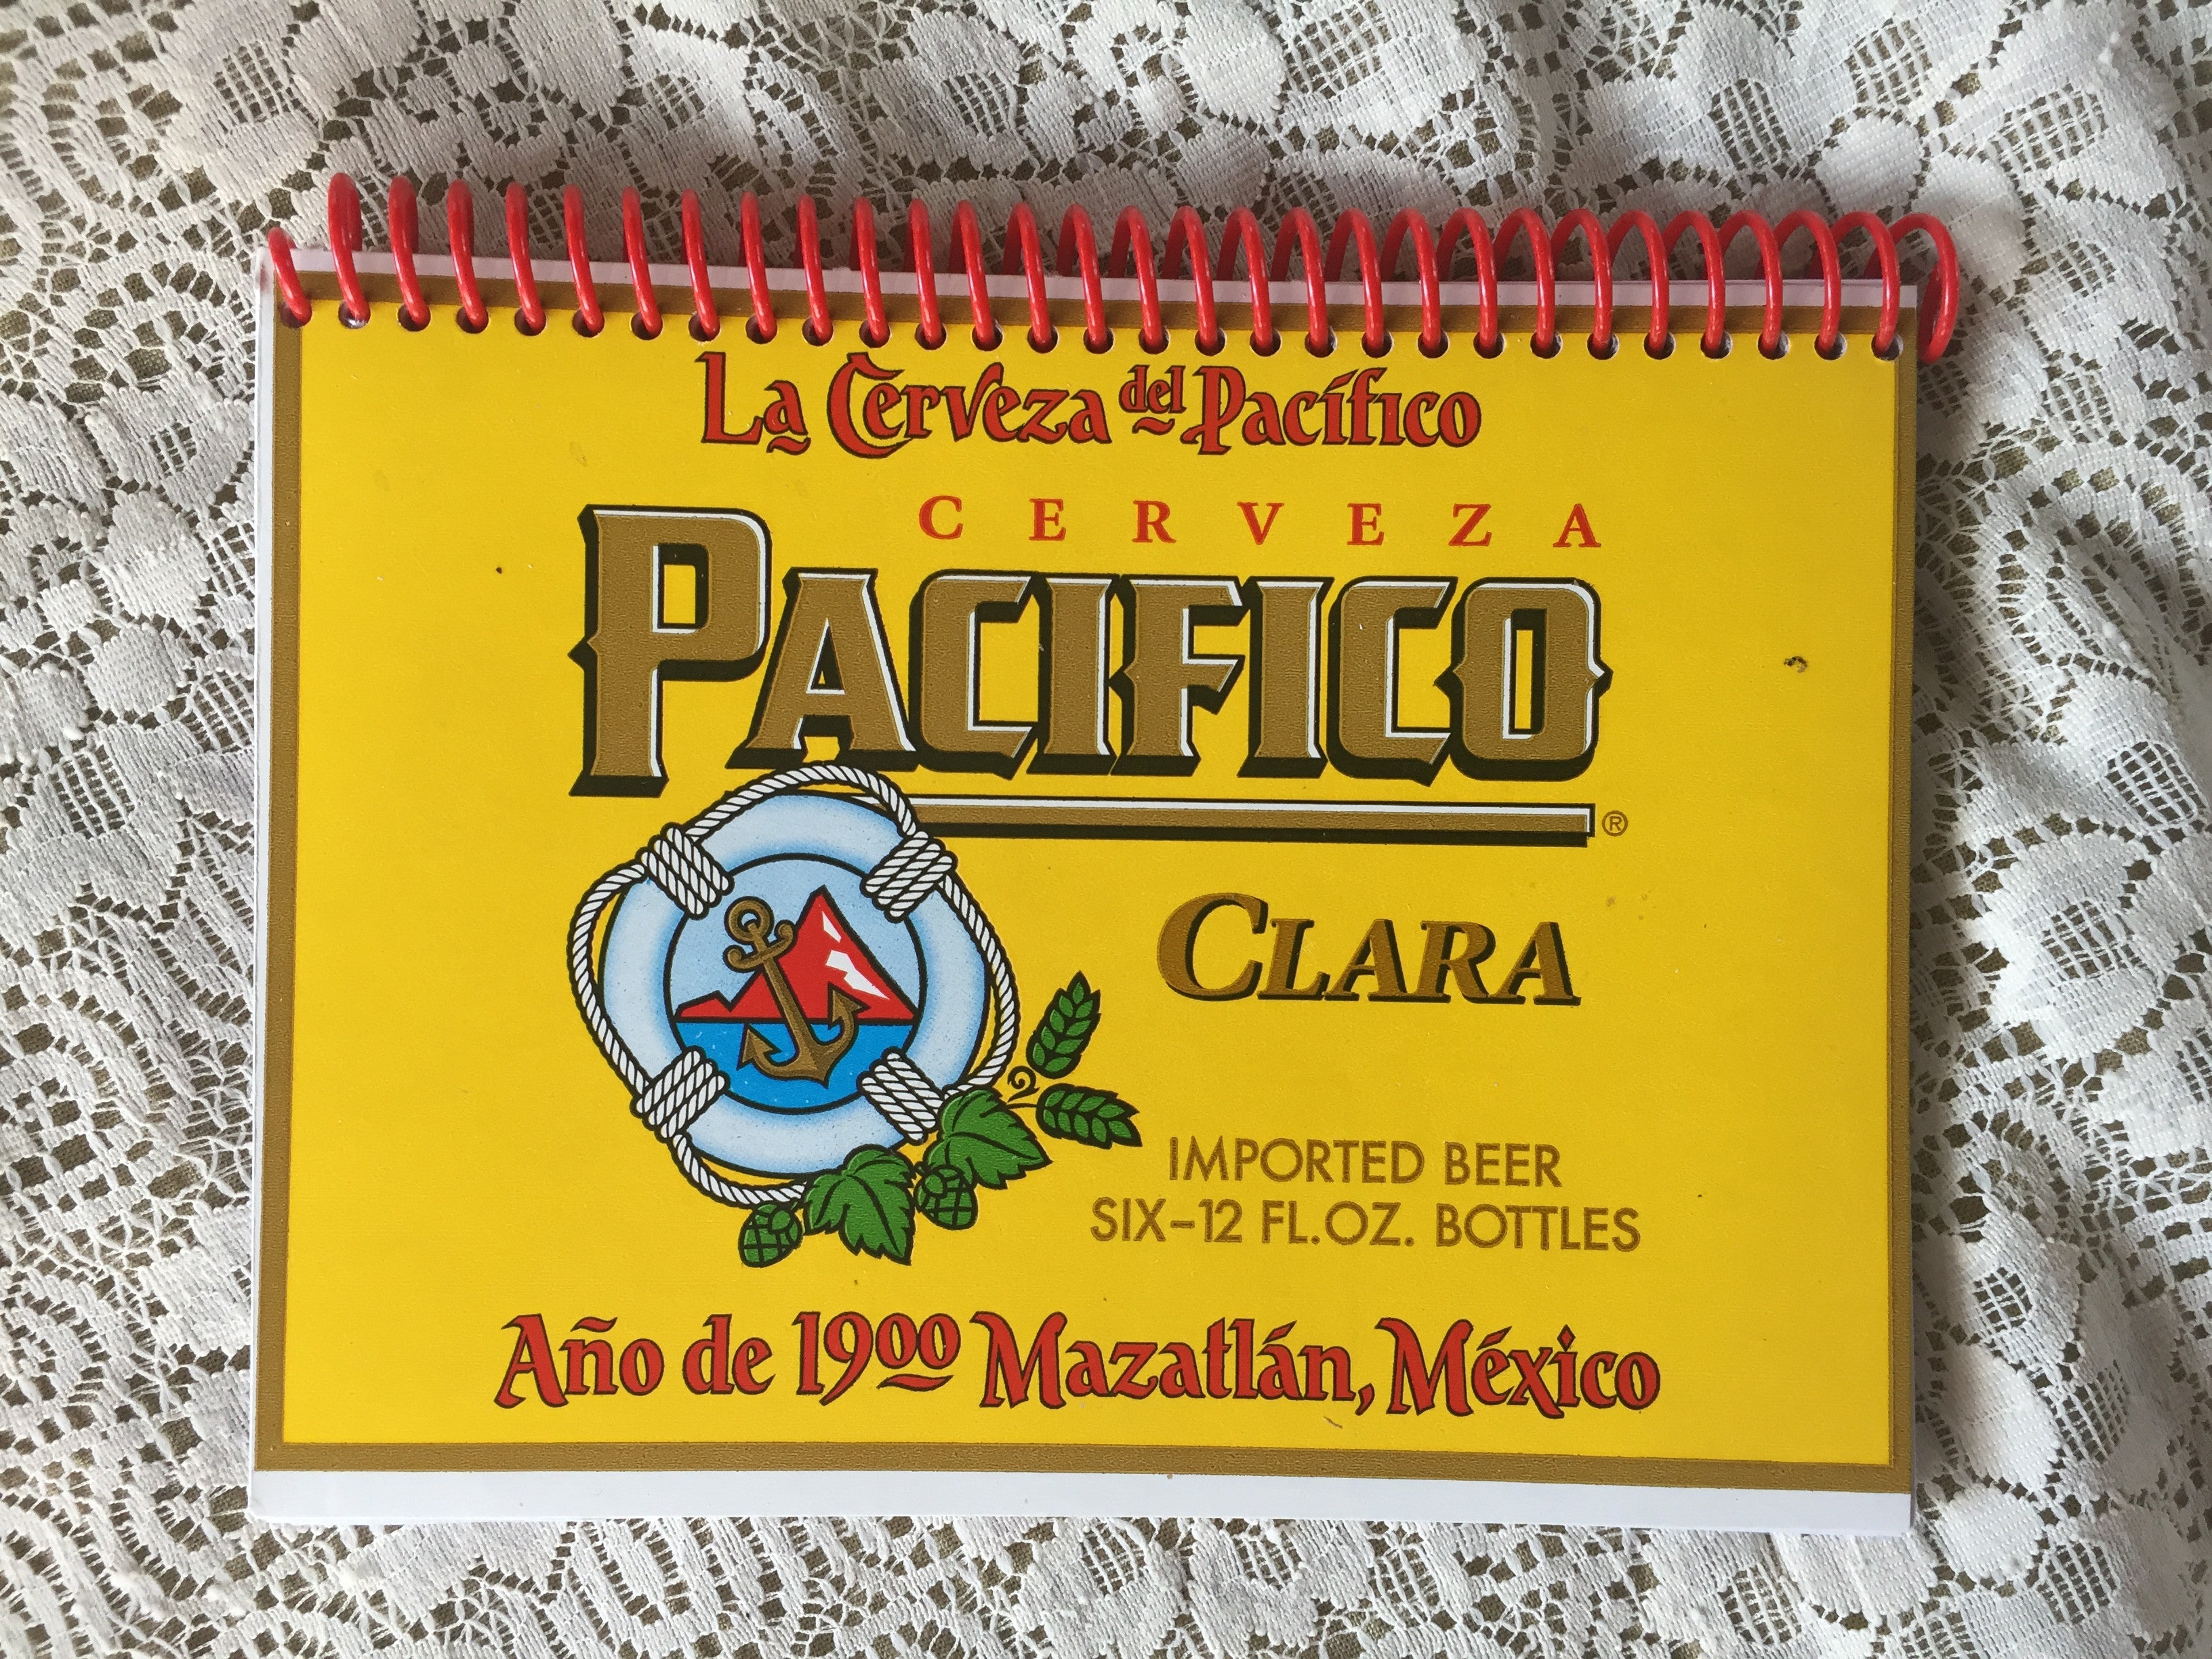 Pacifico Clara Cerveza Recycled Beer Carton Notebook